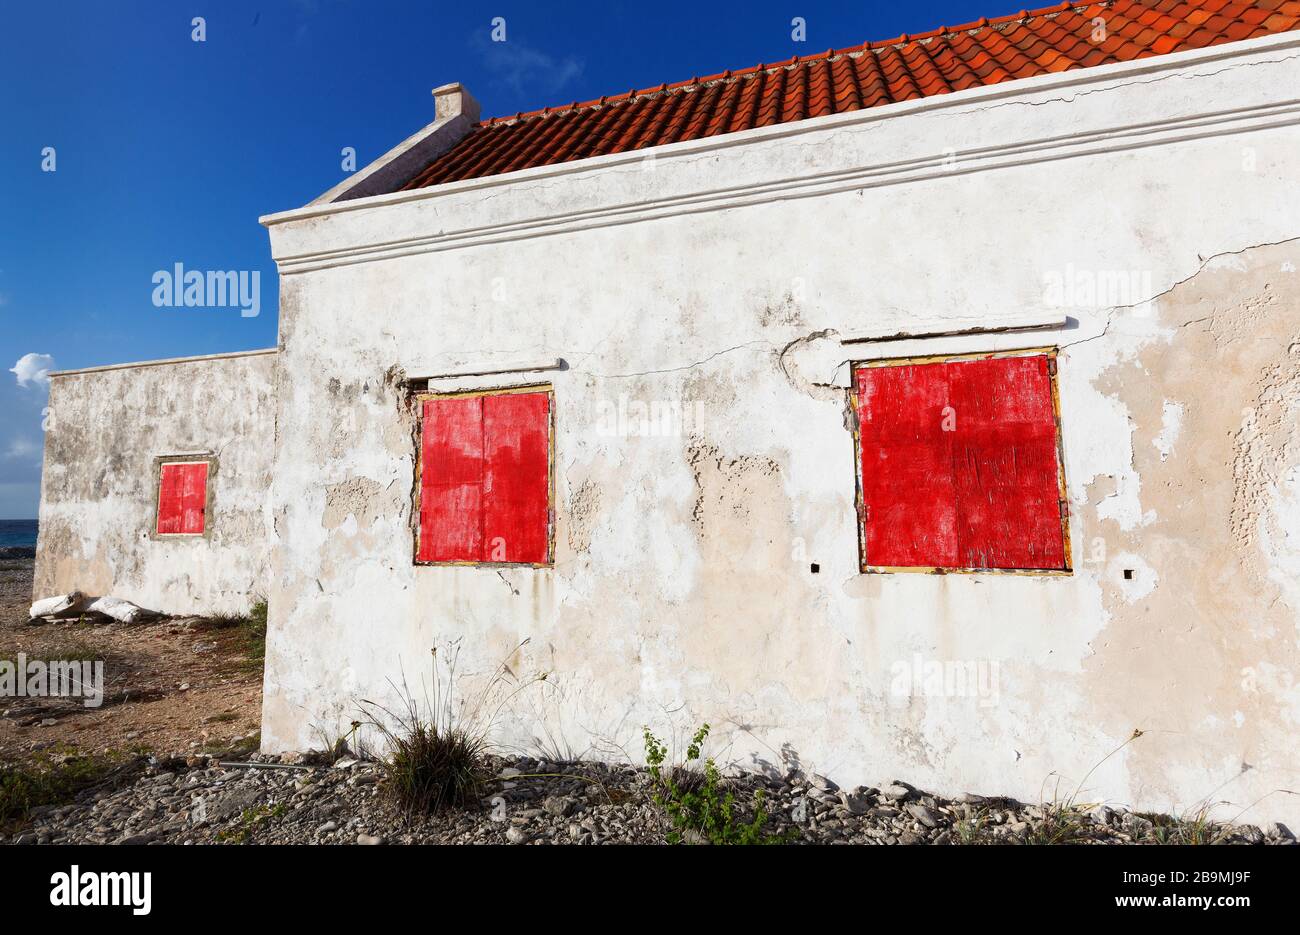 Ancienne maison blanche abandonnée avec volets de fenêtre rouge sur la côte de Bonaire partie des îles ABC, Pays-Bas Antillies, Caraïbes Banque D'Images